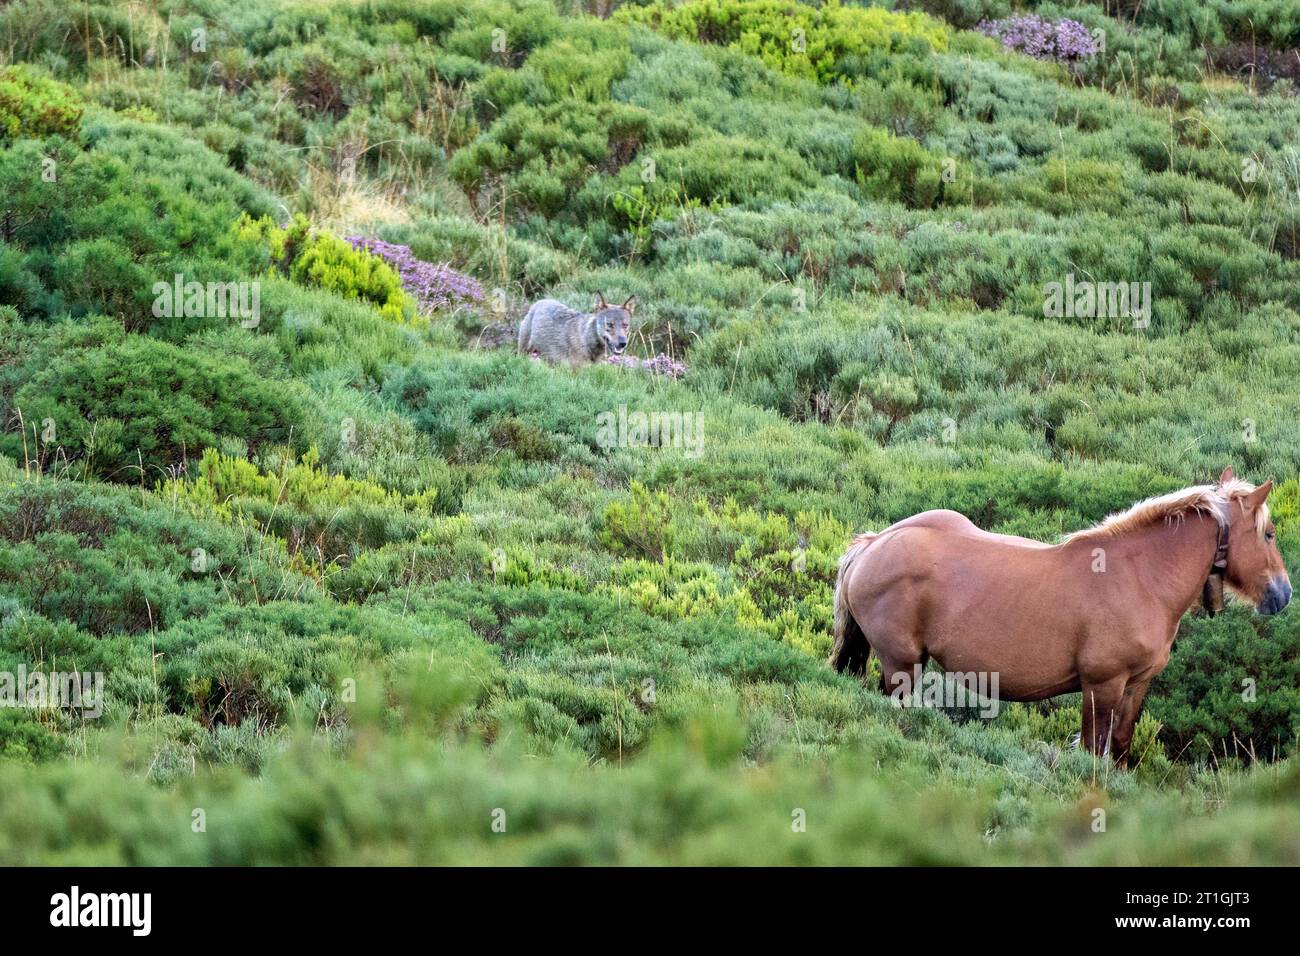 Lupo iberico, lupo iberico (Canis lupus signatus), osservando un cavallo a corsa libera, Spagna Foto Stock